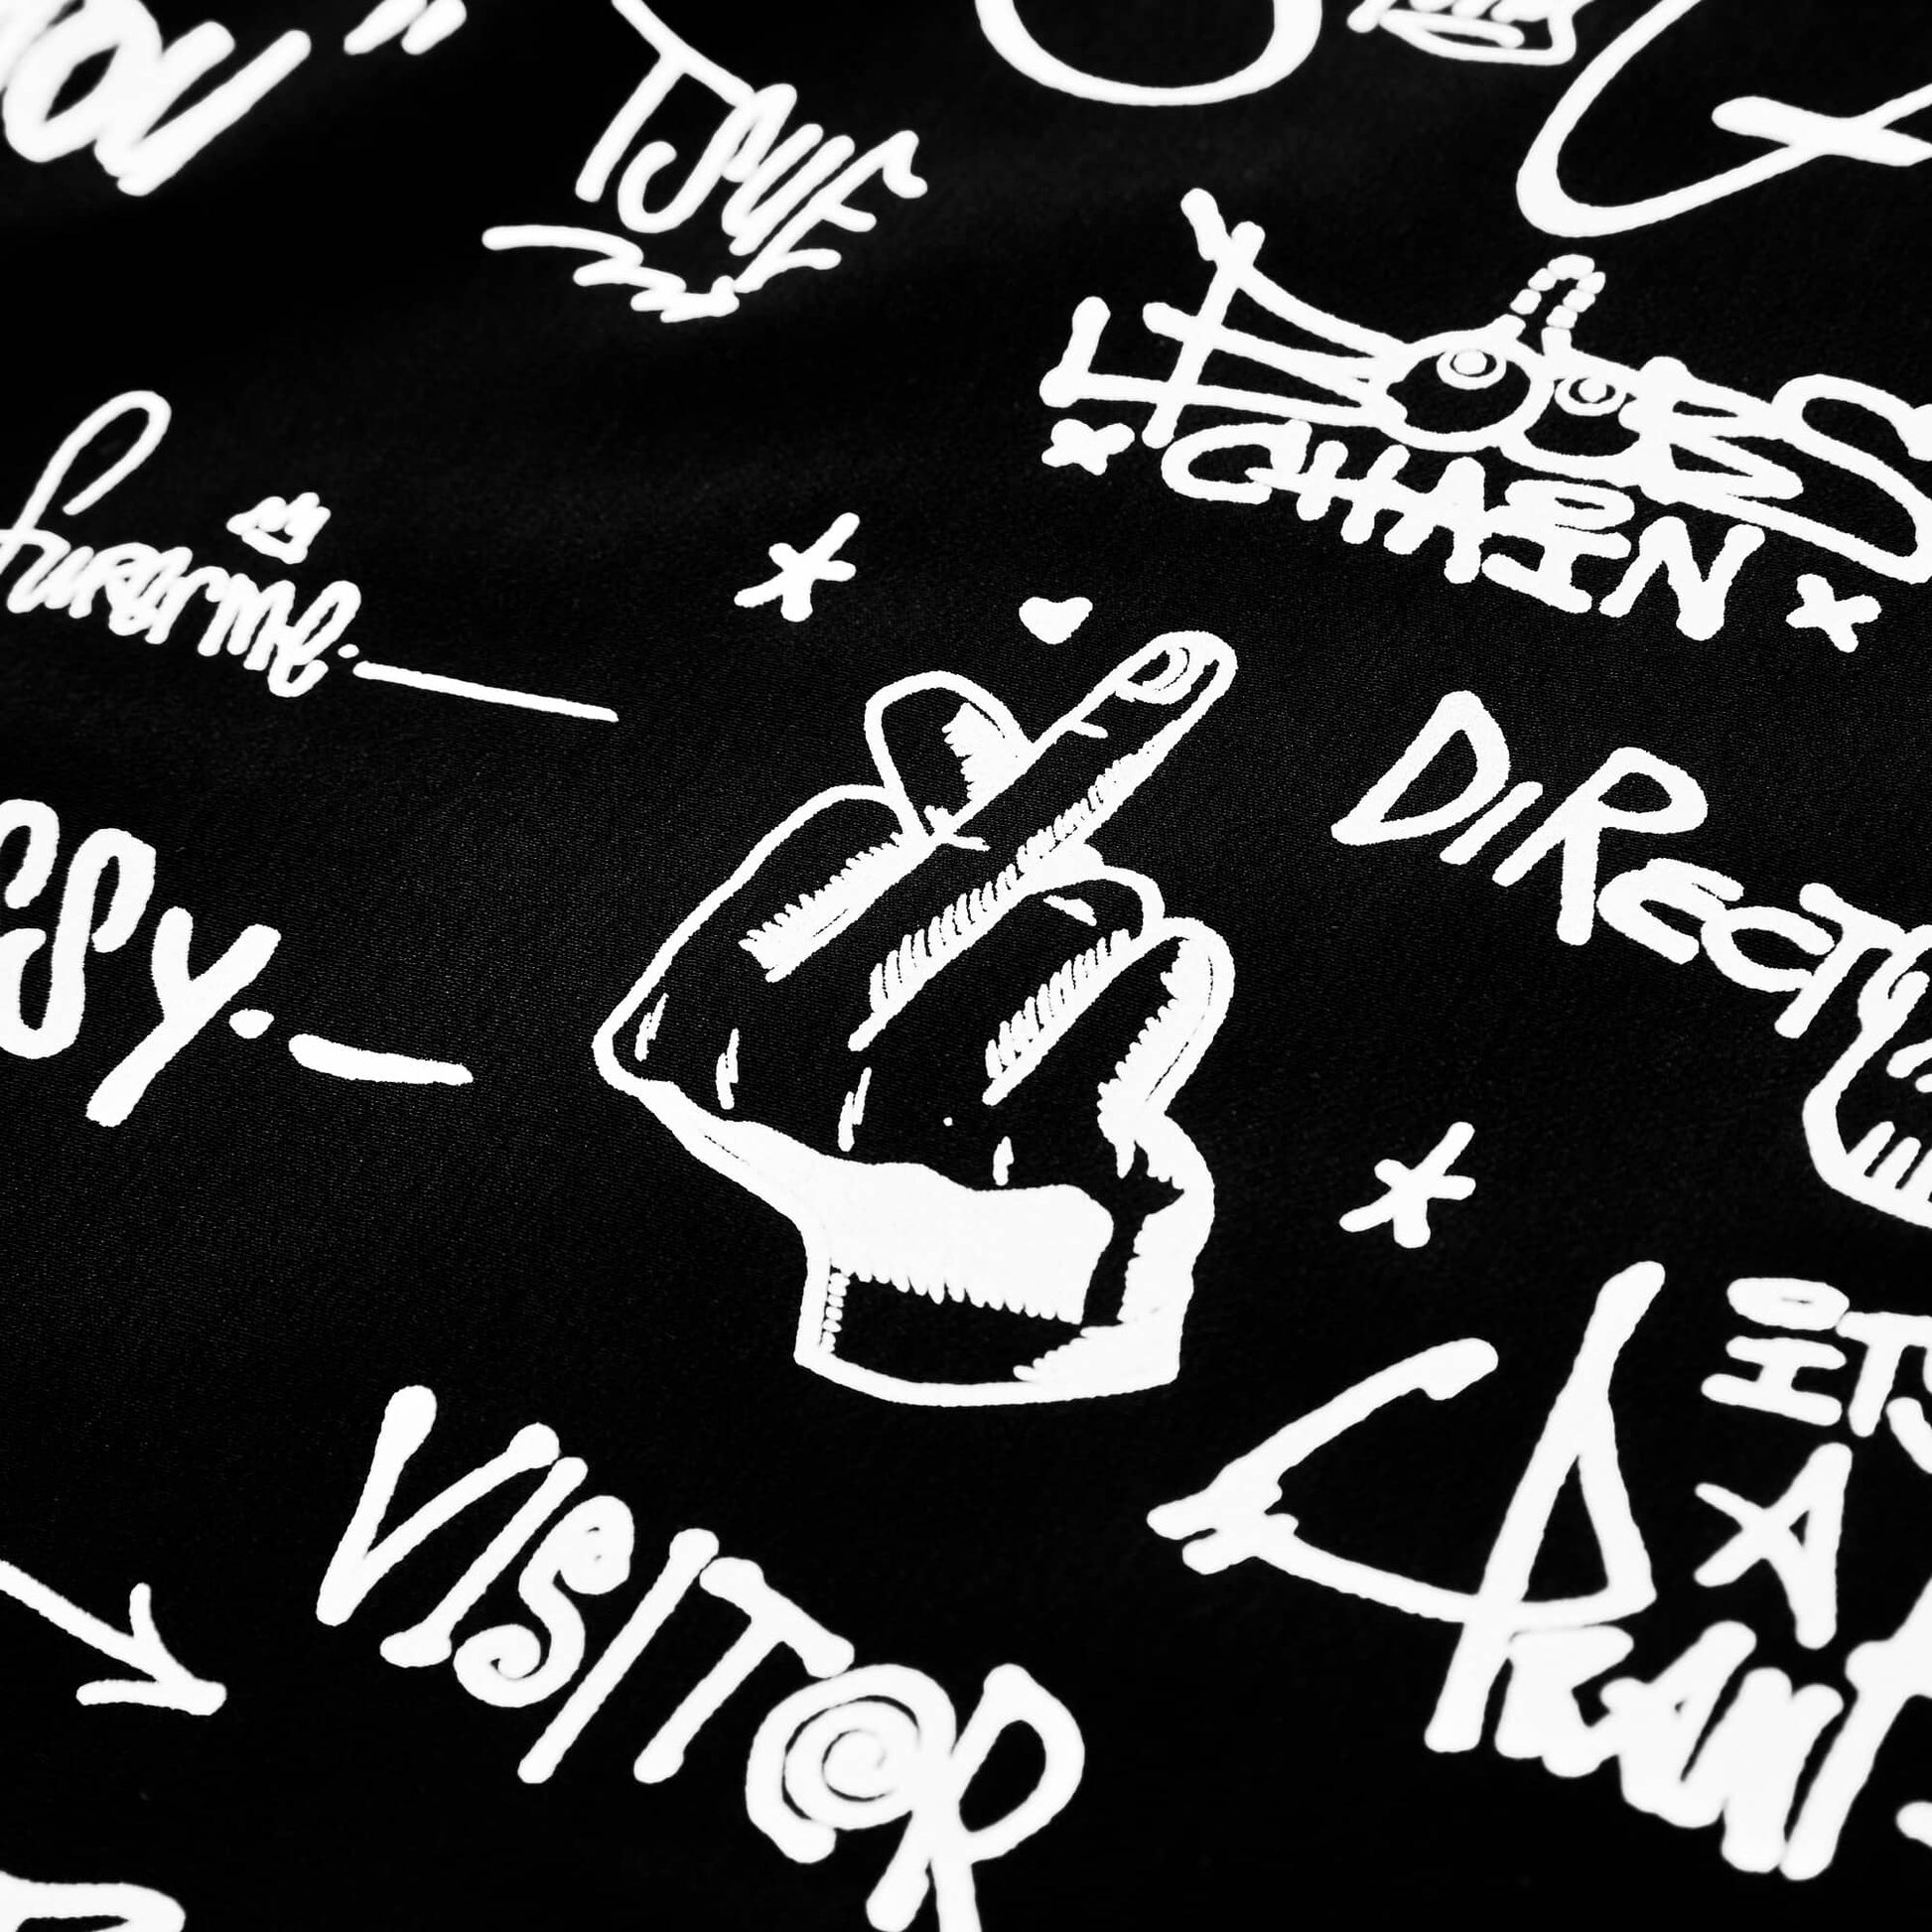 Dissy Graffiti Tag Bowling Shirt 003